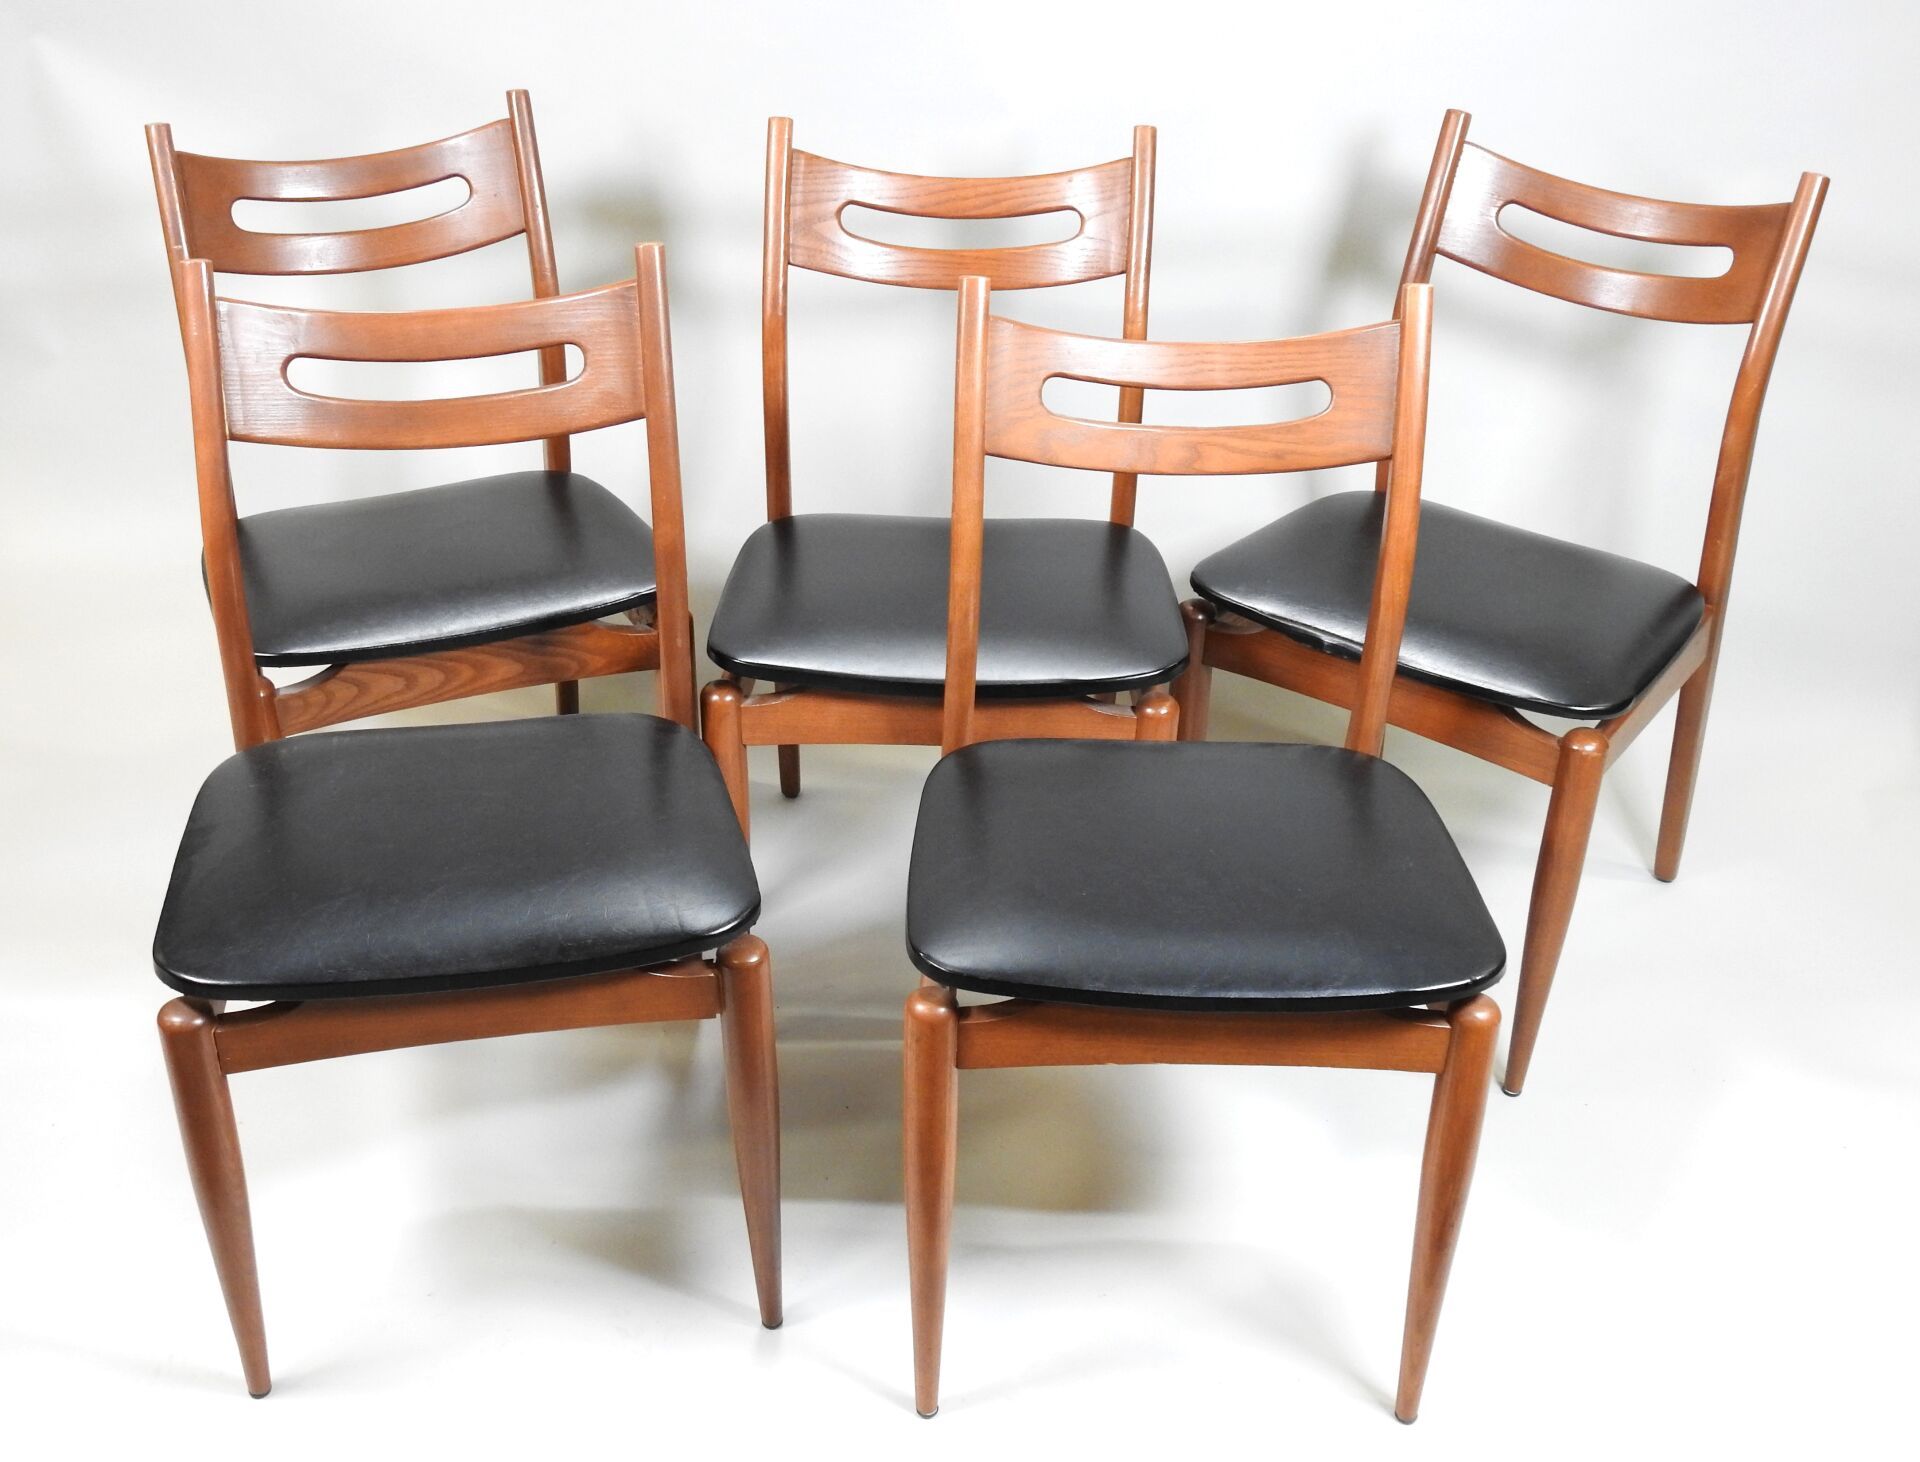 Null Suite di cinque sedie in legno tinto, schienale traforato, seduta in skai.
&hellip;